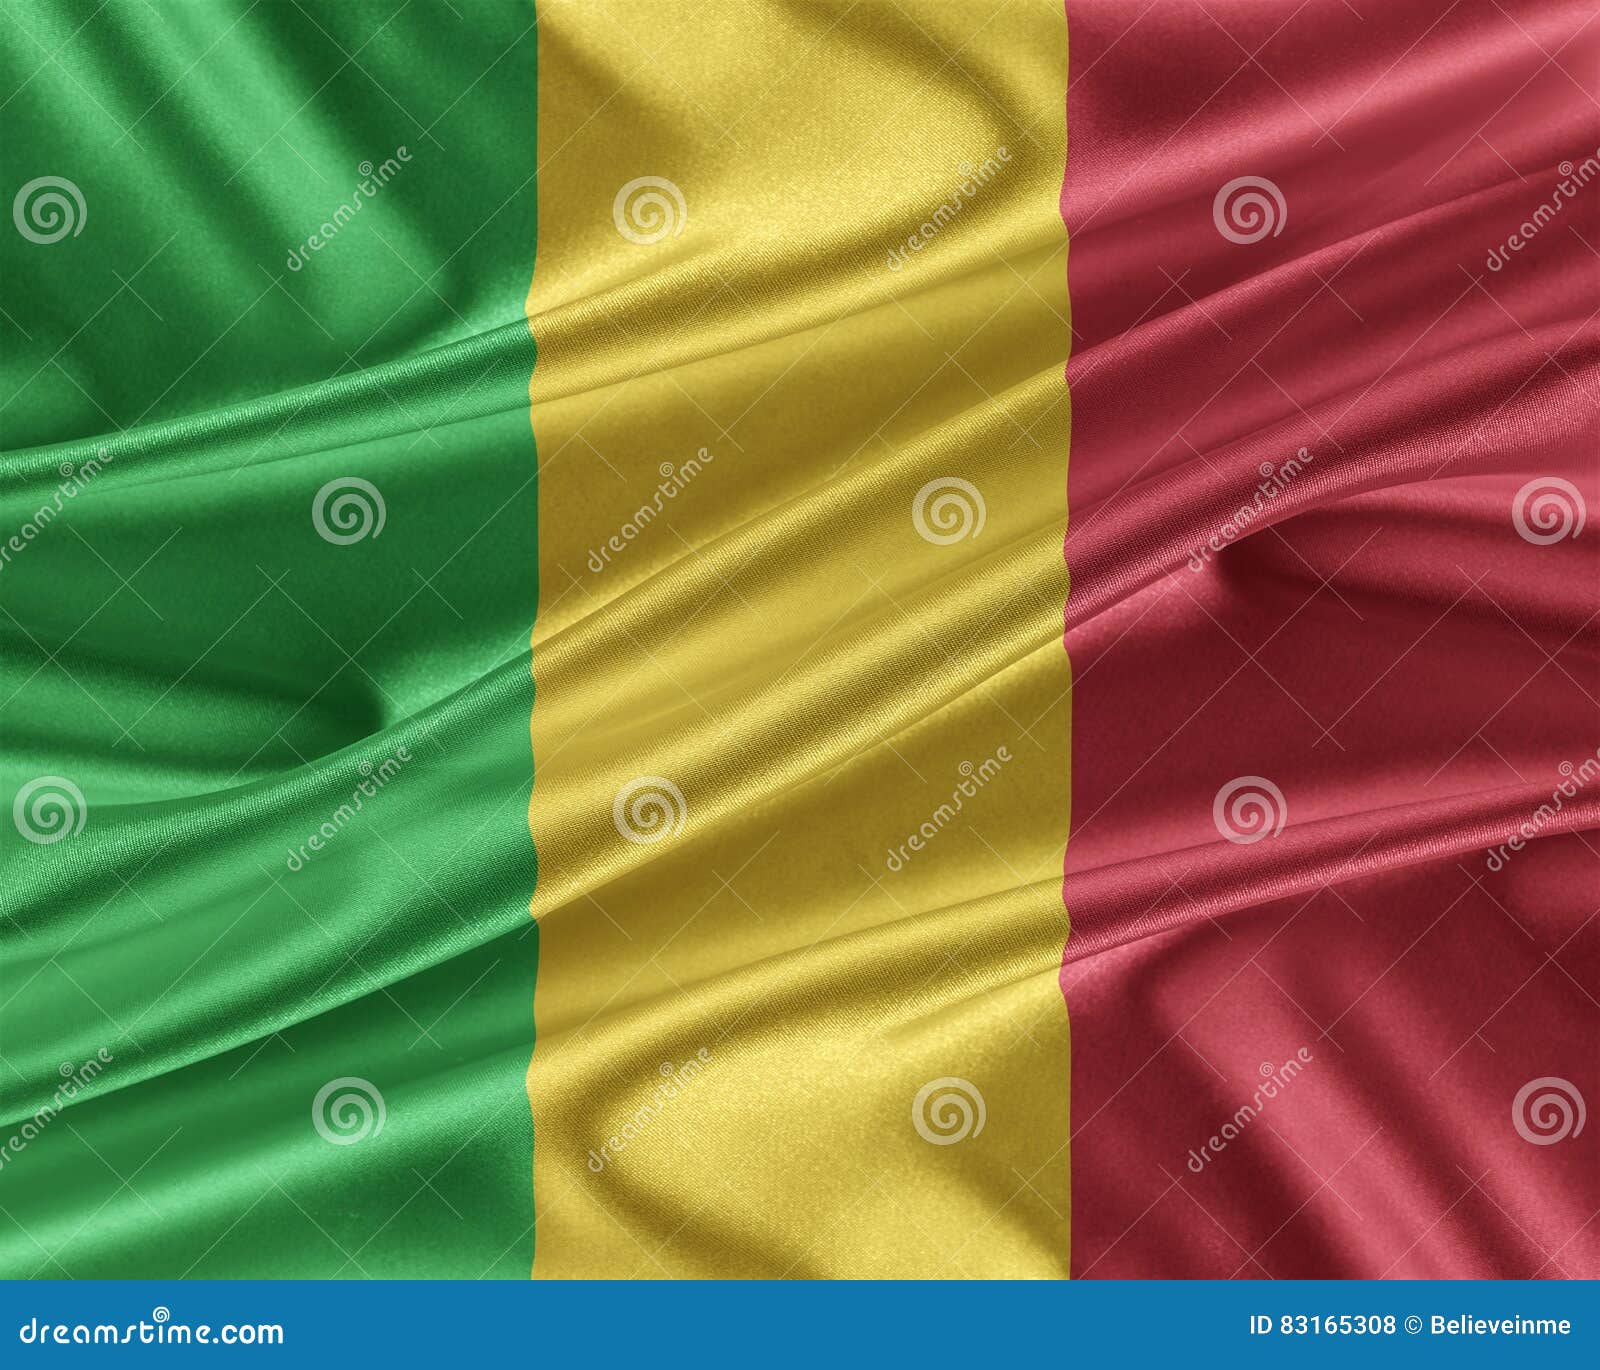 Bandera de Malí con una textura de seda brillante. Mali Flag Bandera con una textura de seda brillante hermosa ilustración 3D